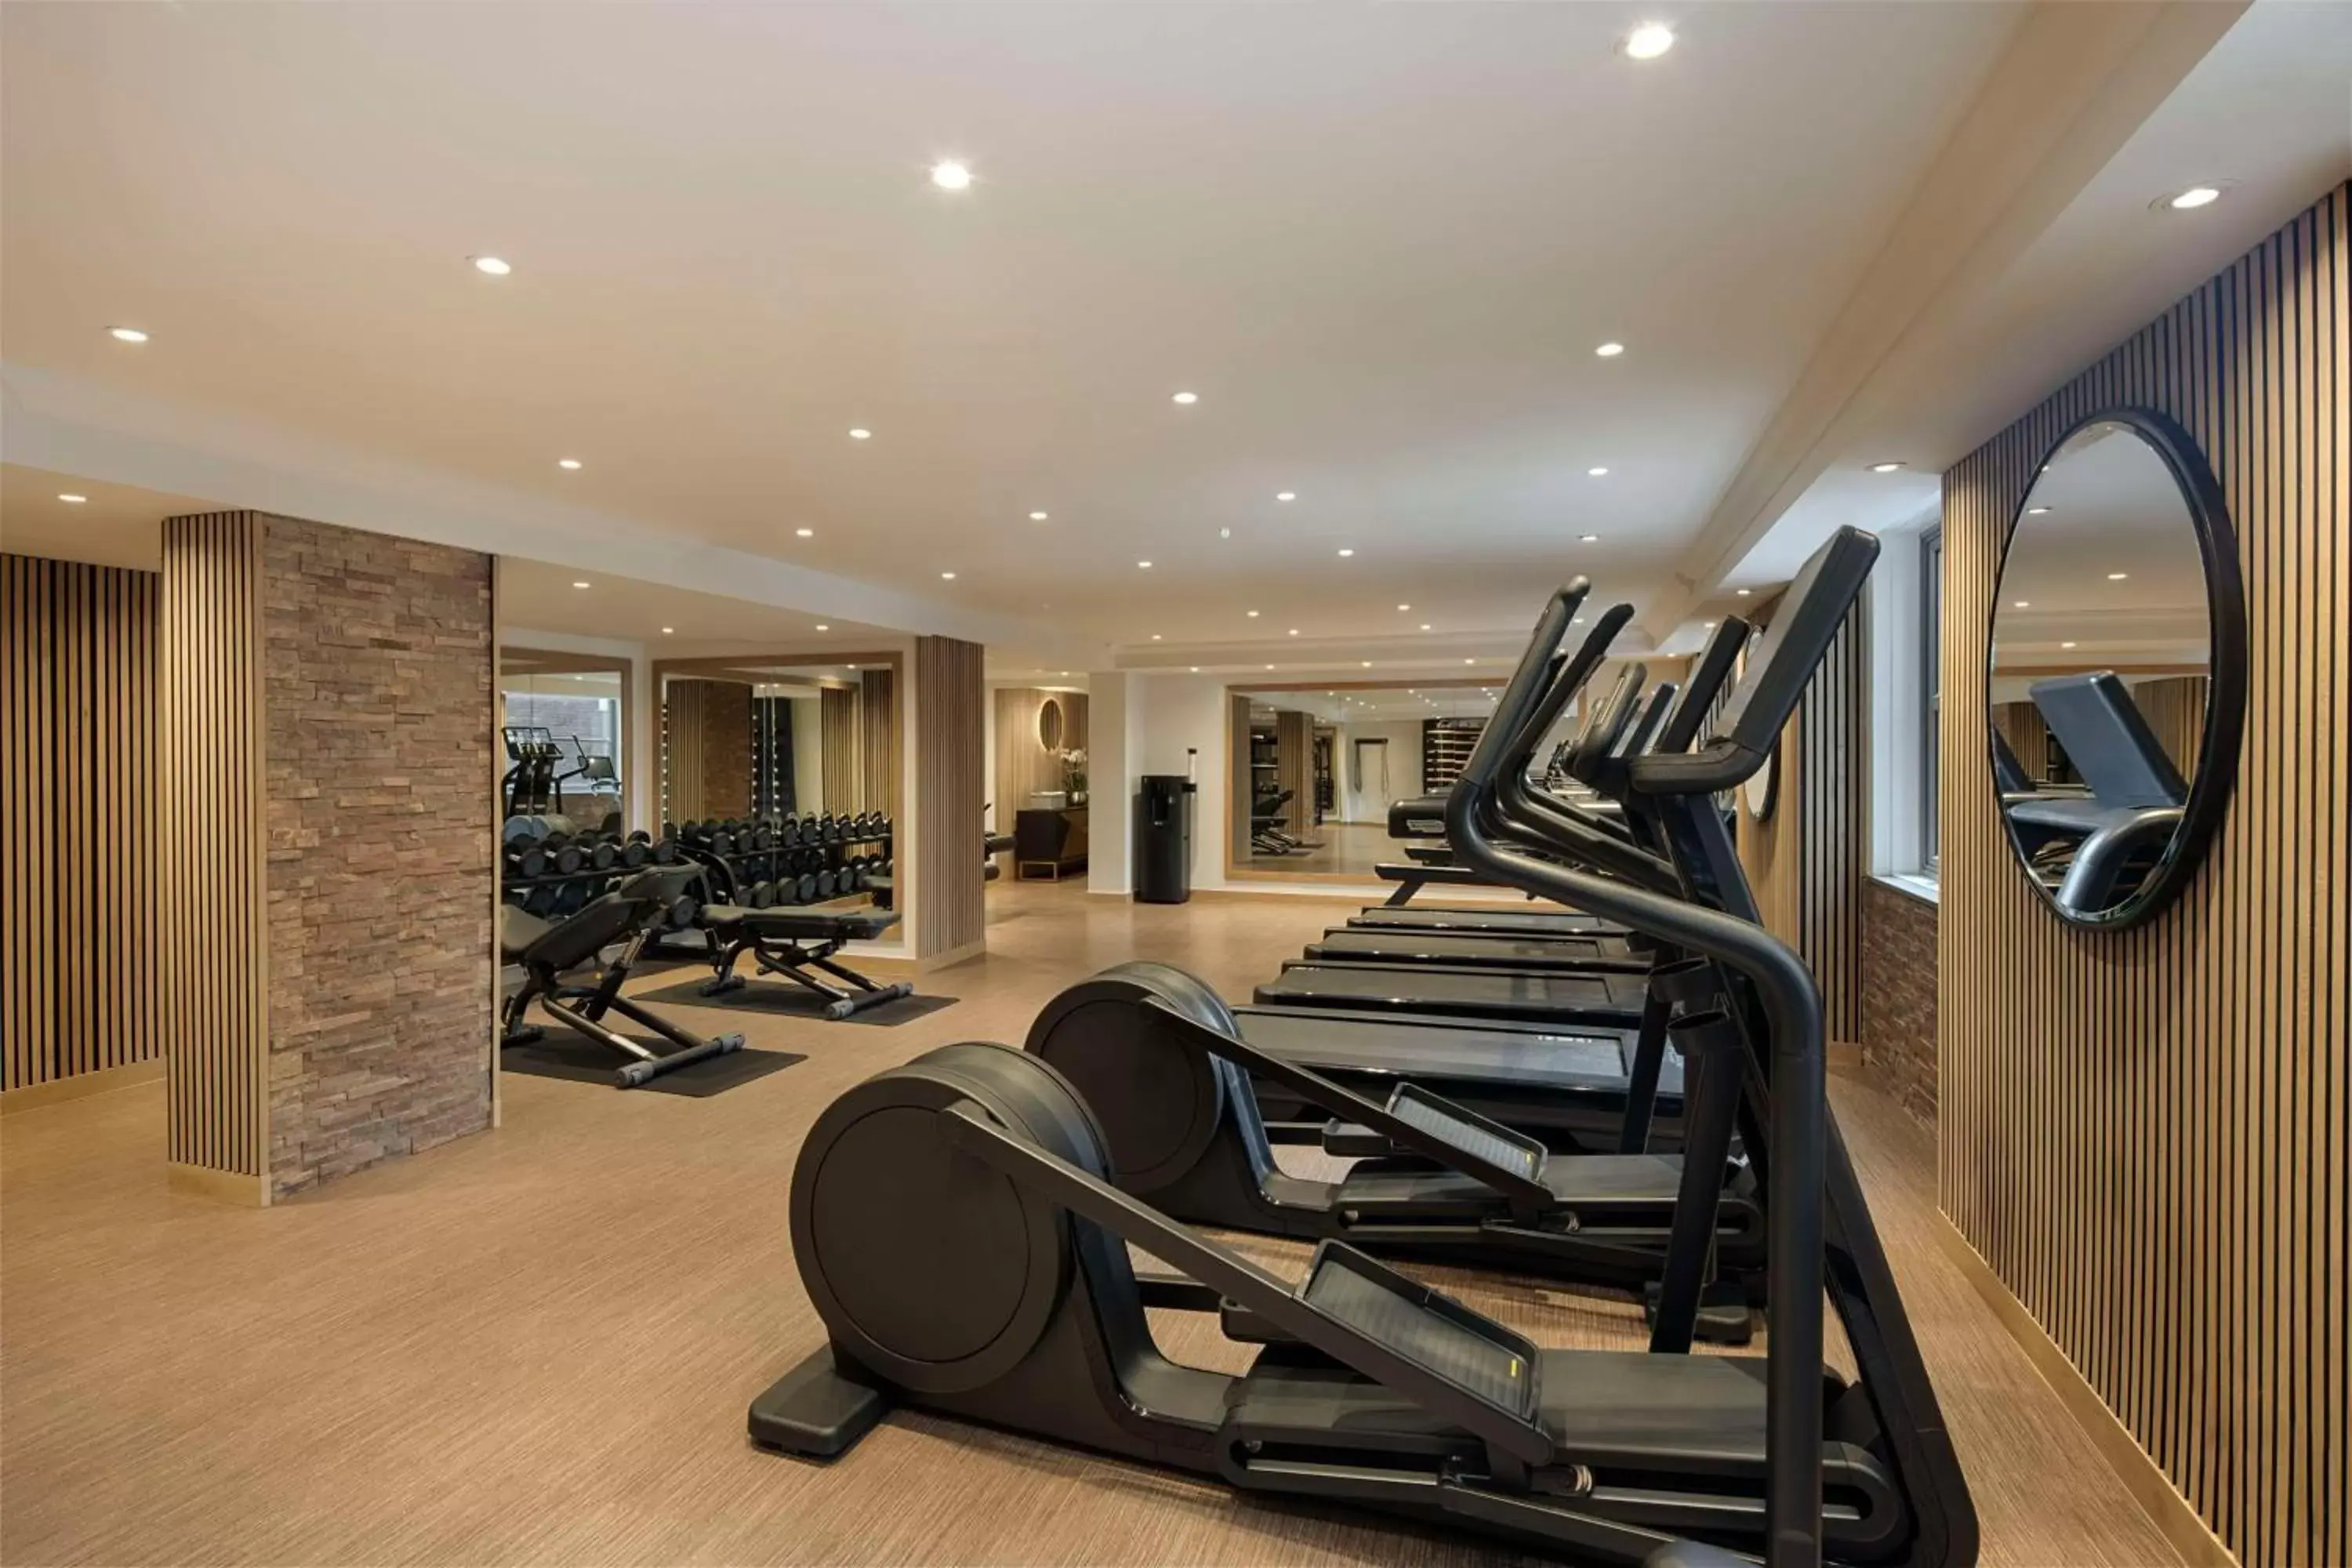 Fitness centre/facilities, Fitness Center/Facilities in Hyatt Regency London - The Churchill